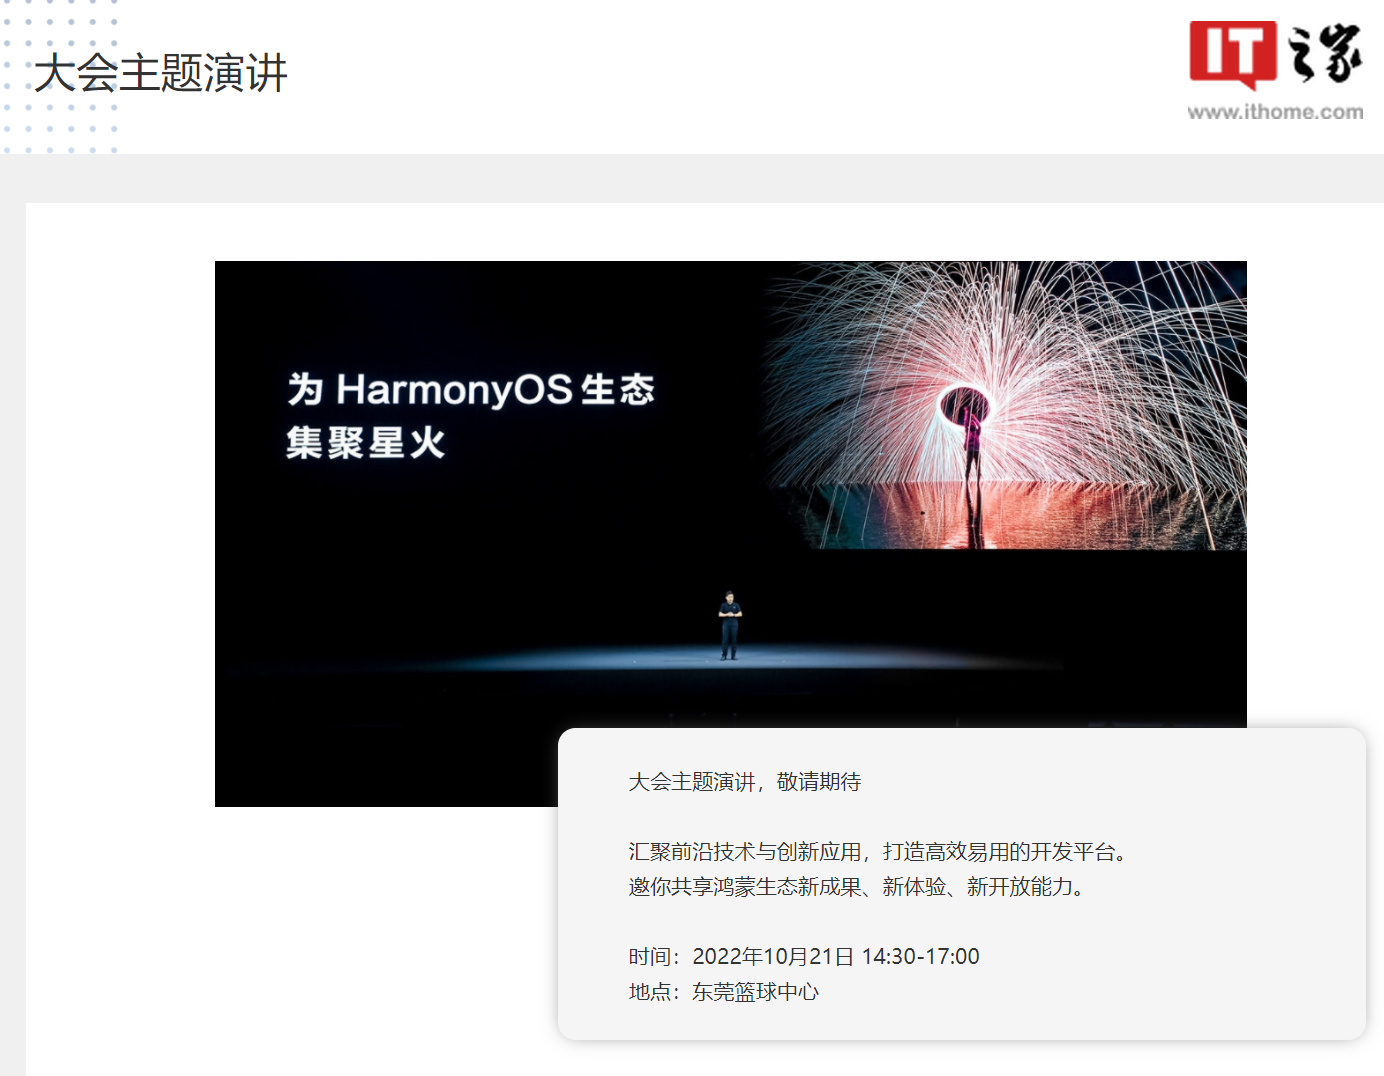 华为 HDC2022 开发者大会延期至 11 月 4~6 日，将带来最新鸿蒙 HarmonyOS 技术